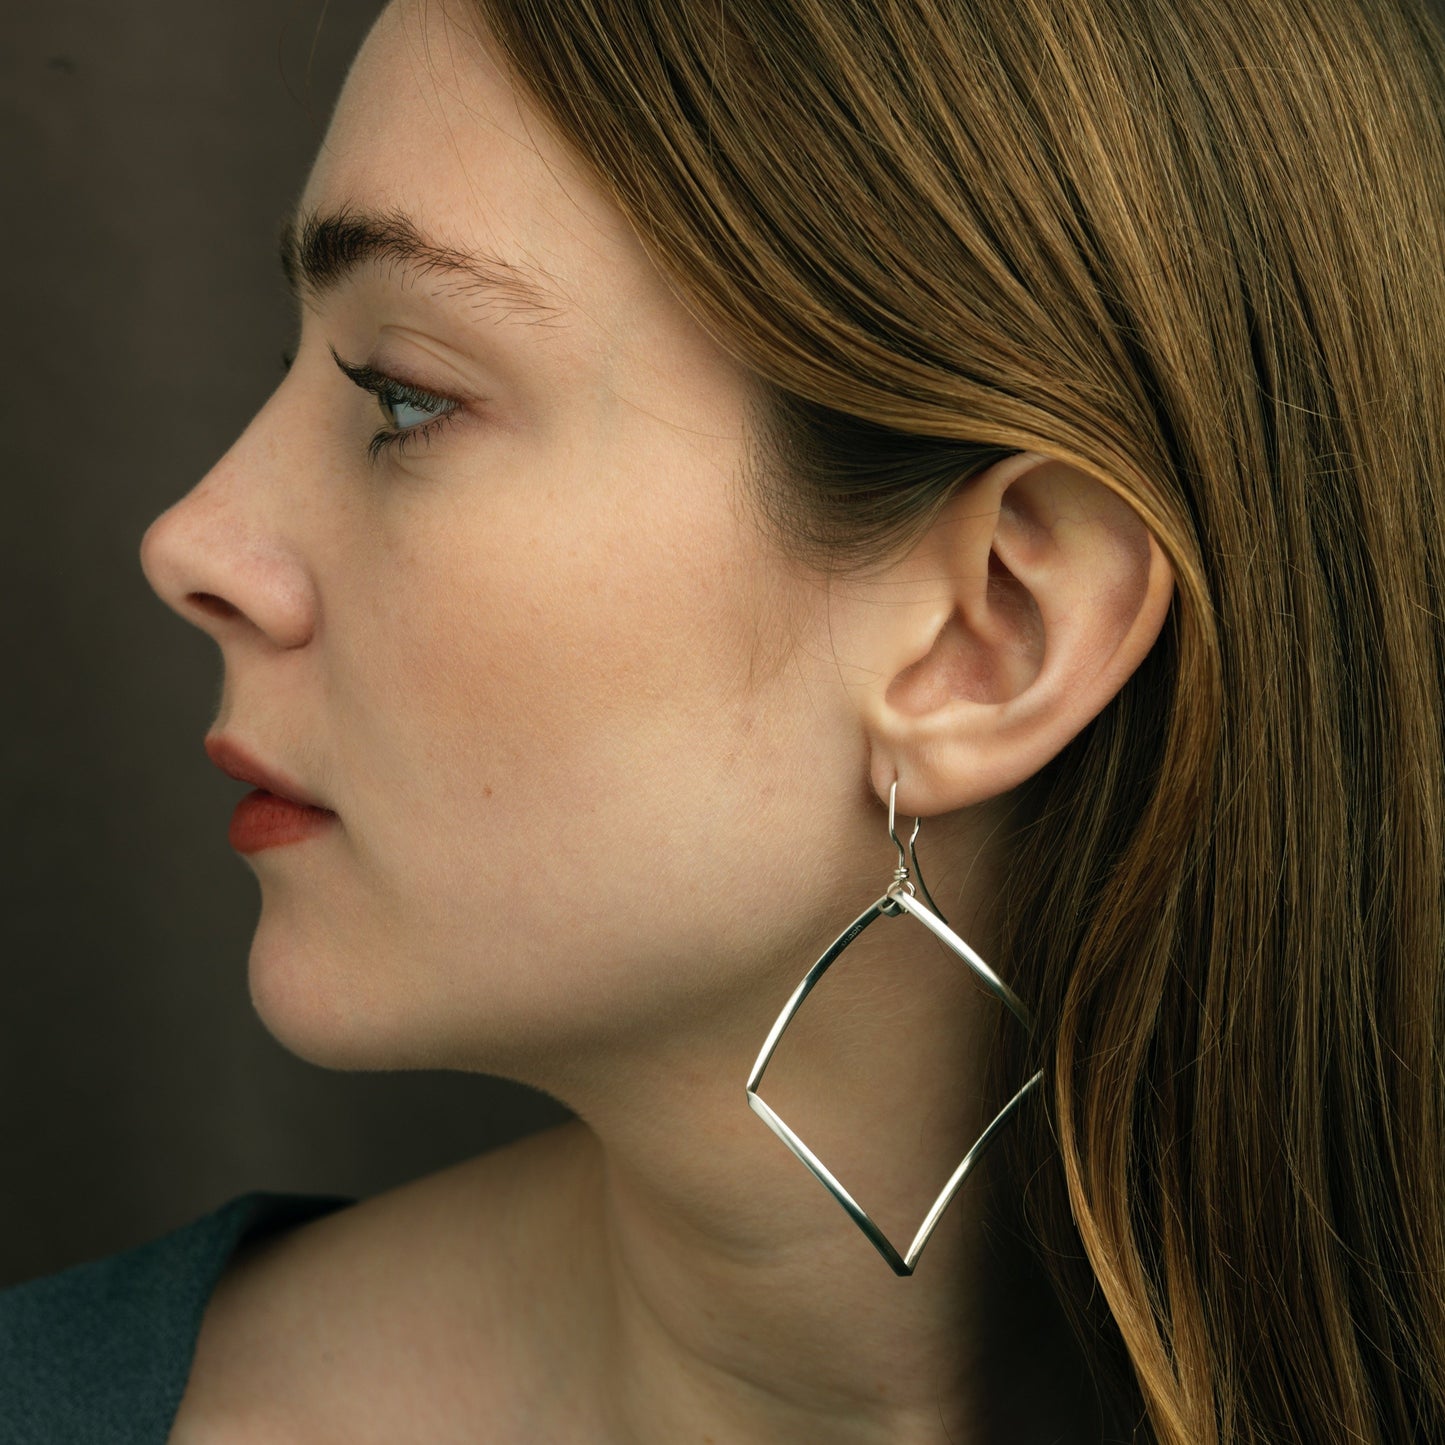 Prism earrings